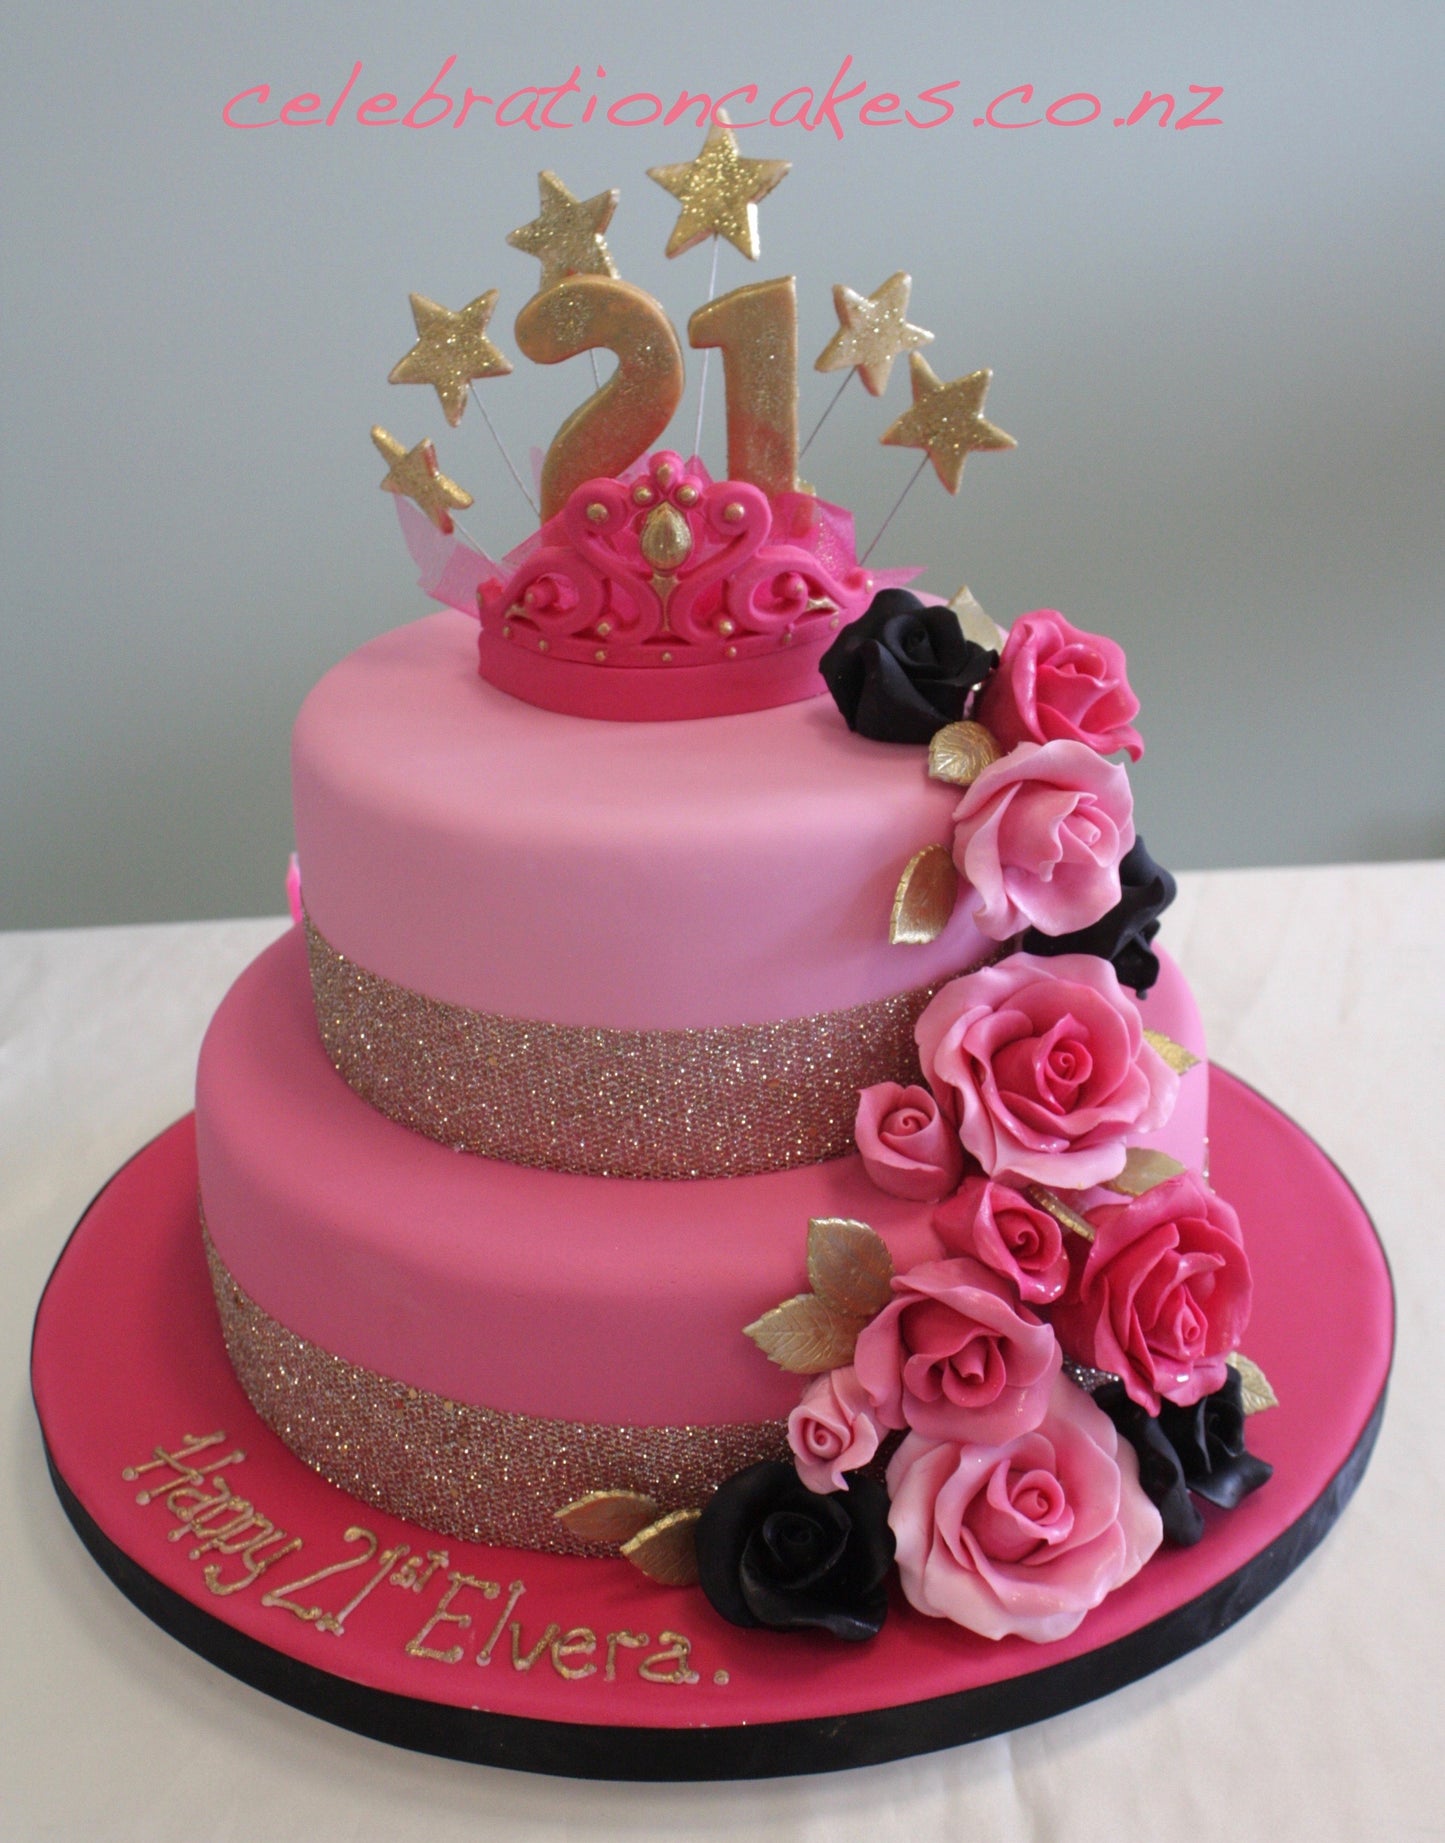 21st Birthday Cakes Auckland, NZ